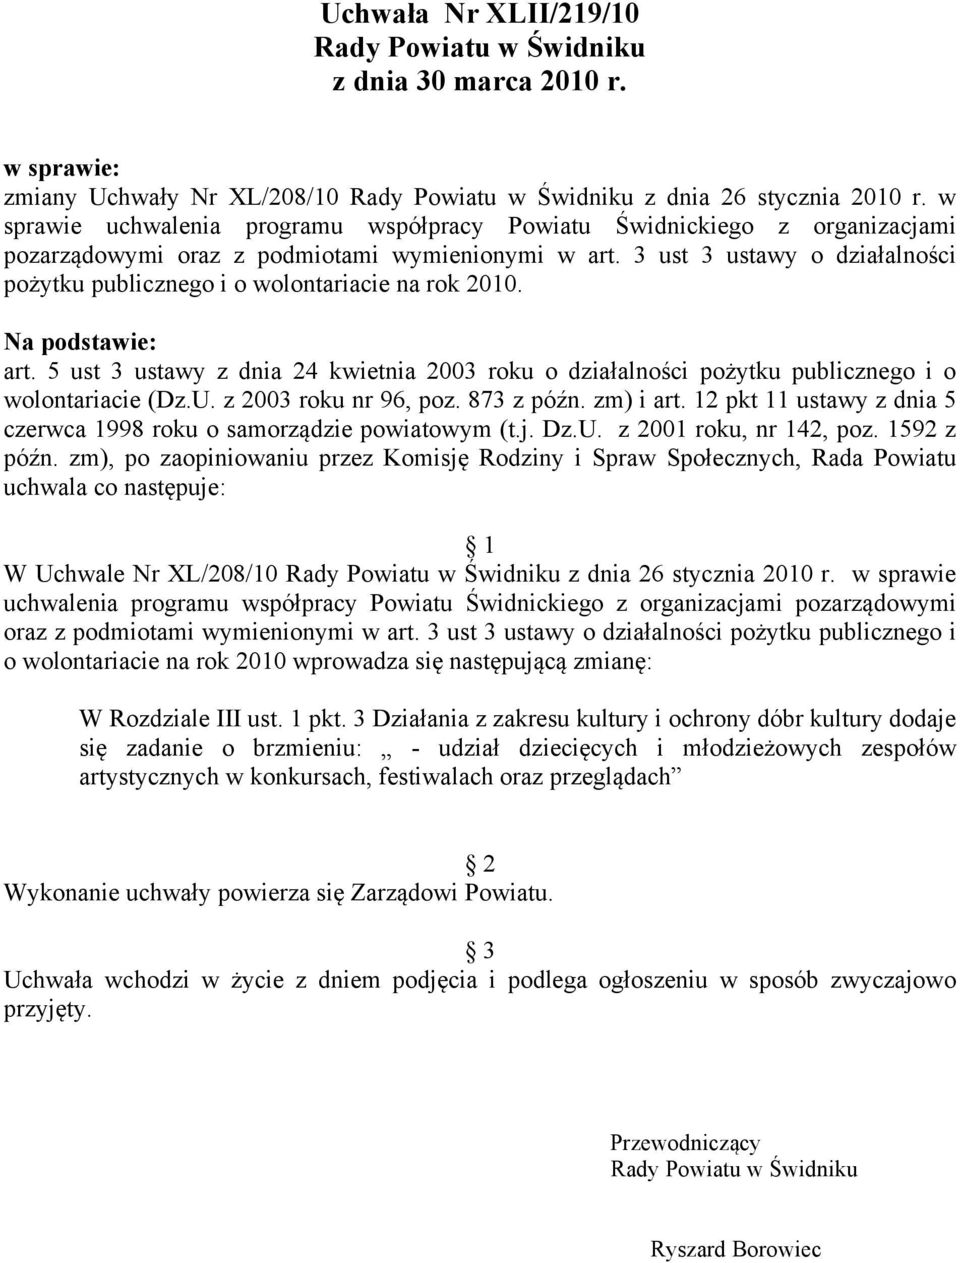 3 ust 3 ustawy o działalności pożytku publicznego i o wolontariacie na rok 2010. Na podstawie: art.